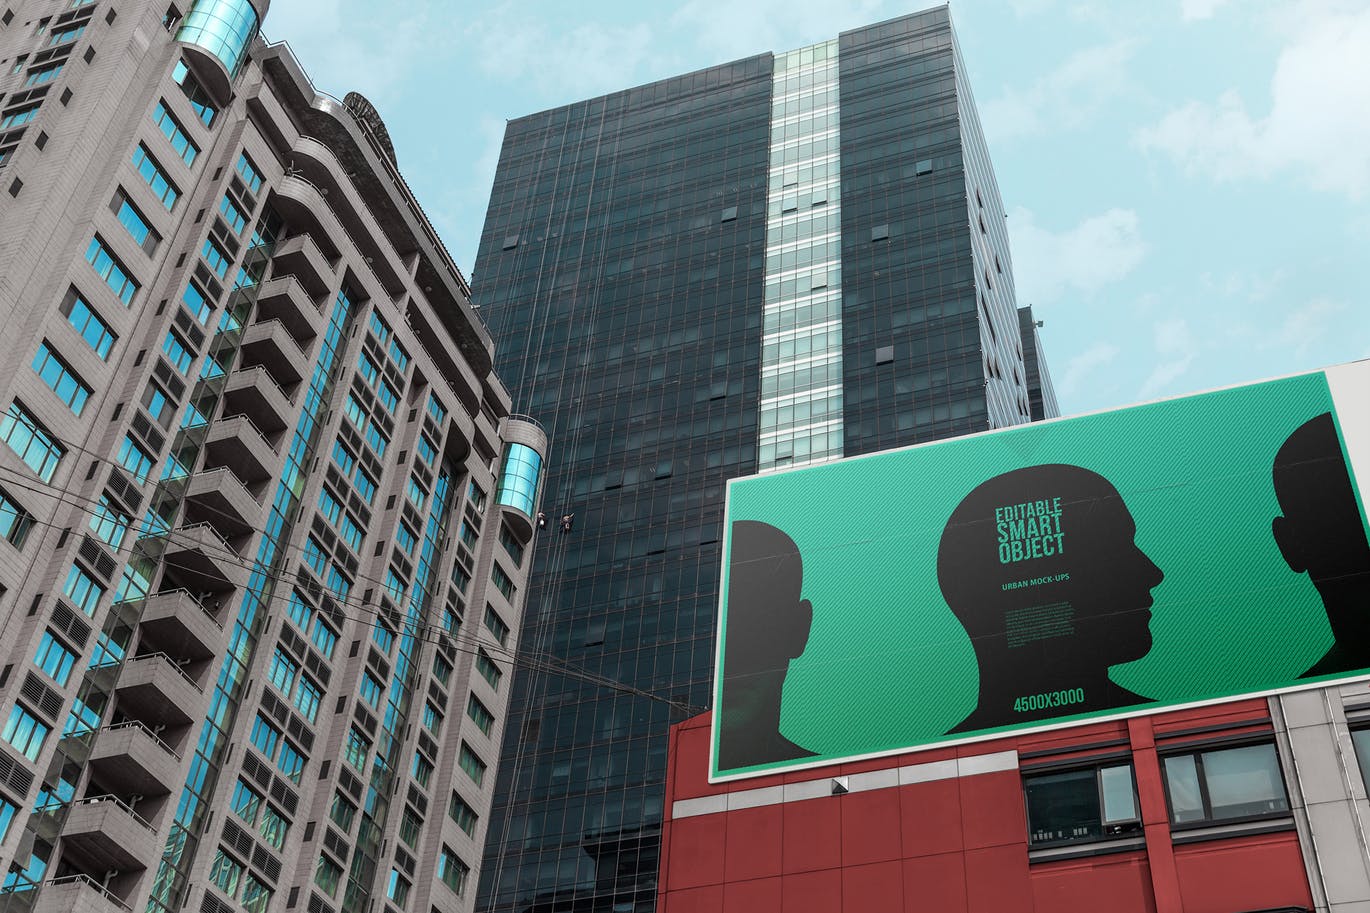 城市海报广告牌设计效果图预览样机素材库精选模板#6 Urban Poster / Billboard Mock-up – Huge Edition #6插图